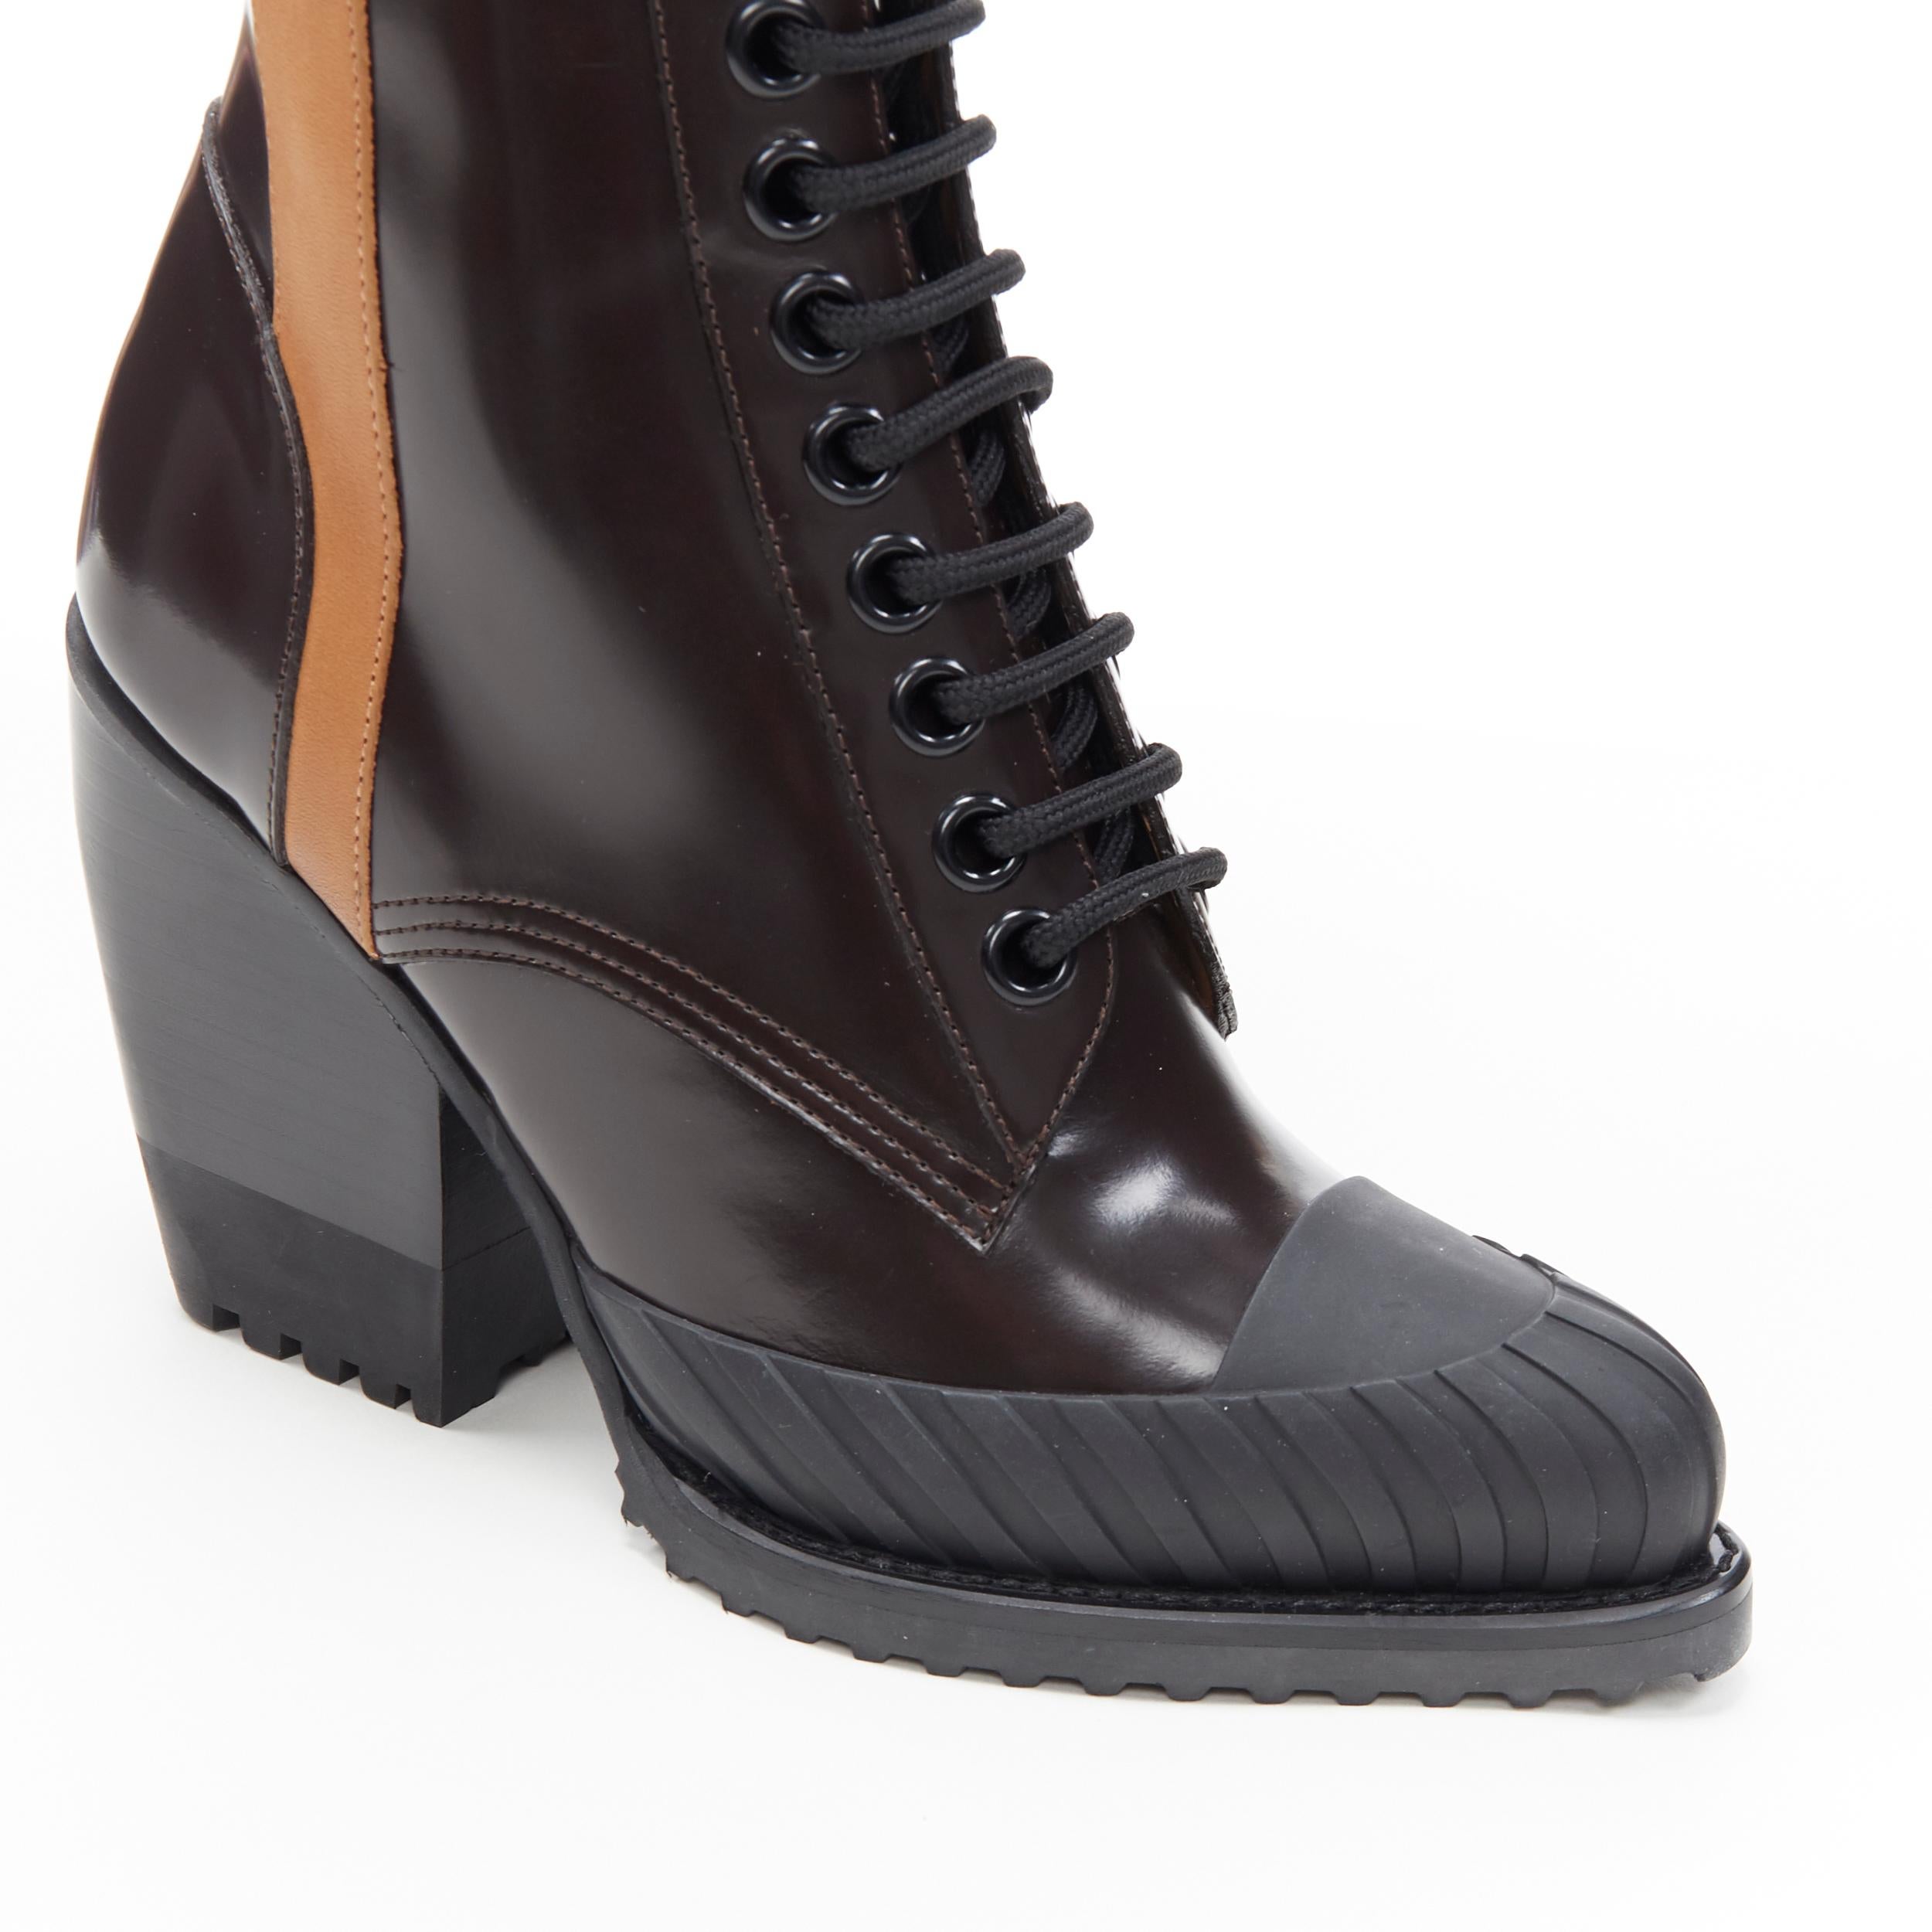 Women's new CHLOE Runway Rylee brown glossy leather block heel heel rubber boot EU38.5